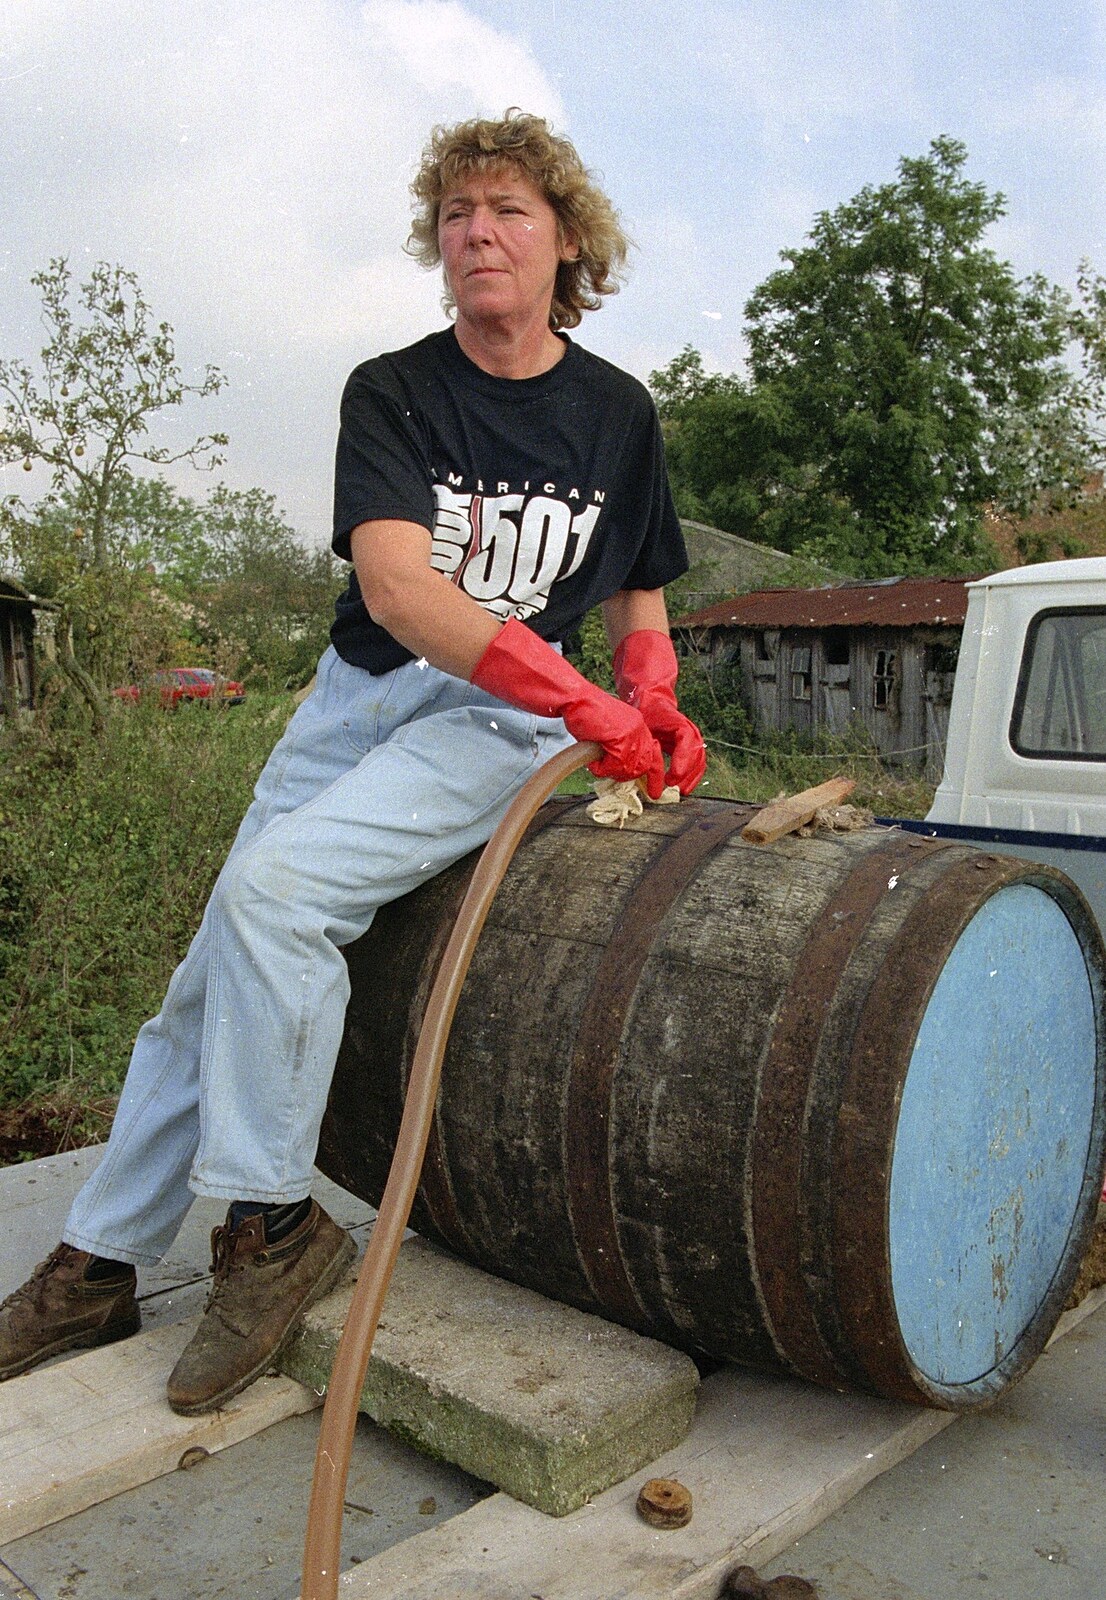 Brenda fills up a barrel from Cider Making, Stuston, Suffolk - 14th October 1991